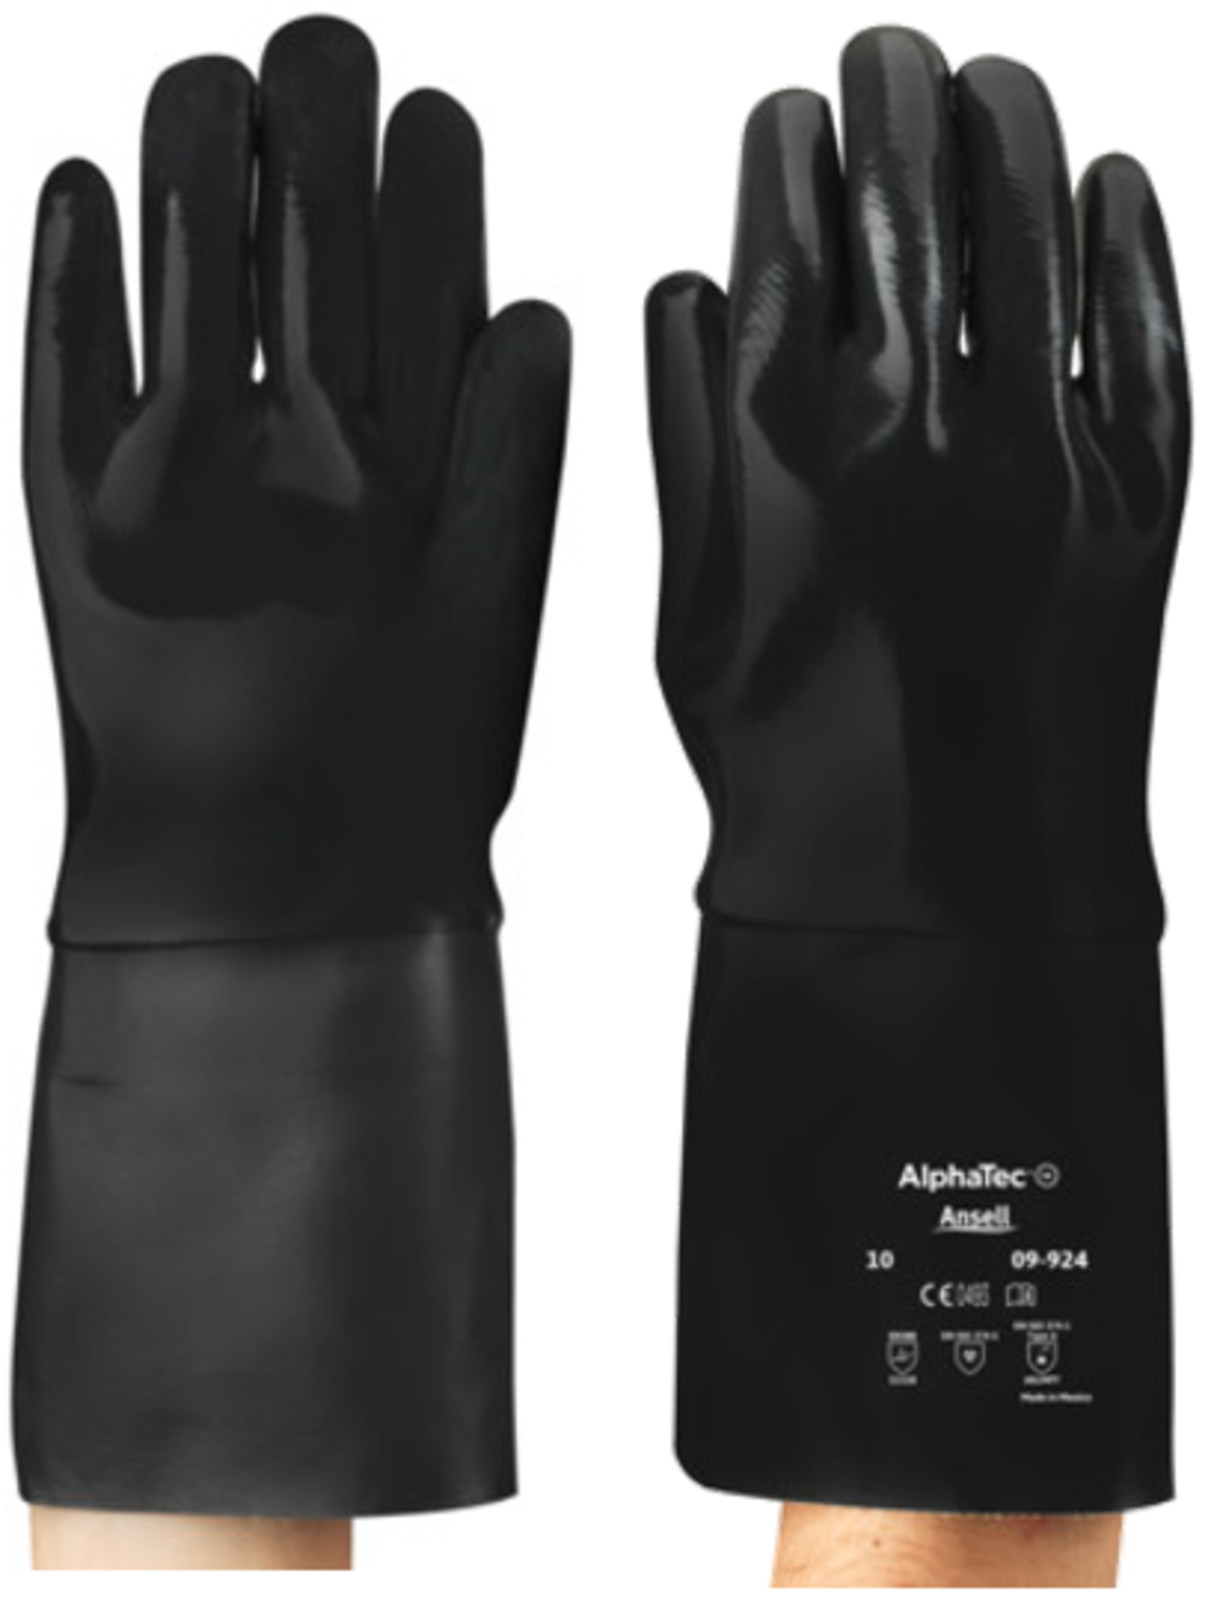 Protichemické rukavice  09-924 Neox 35 cm - veľkosť: 10/XL